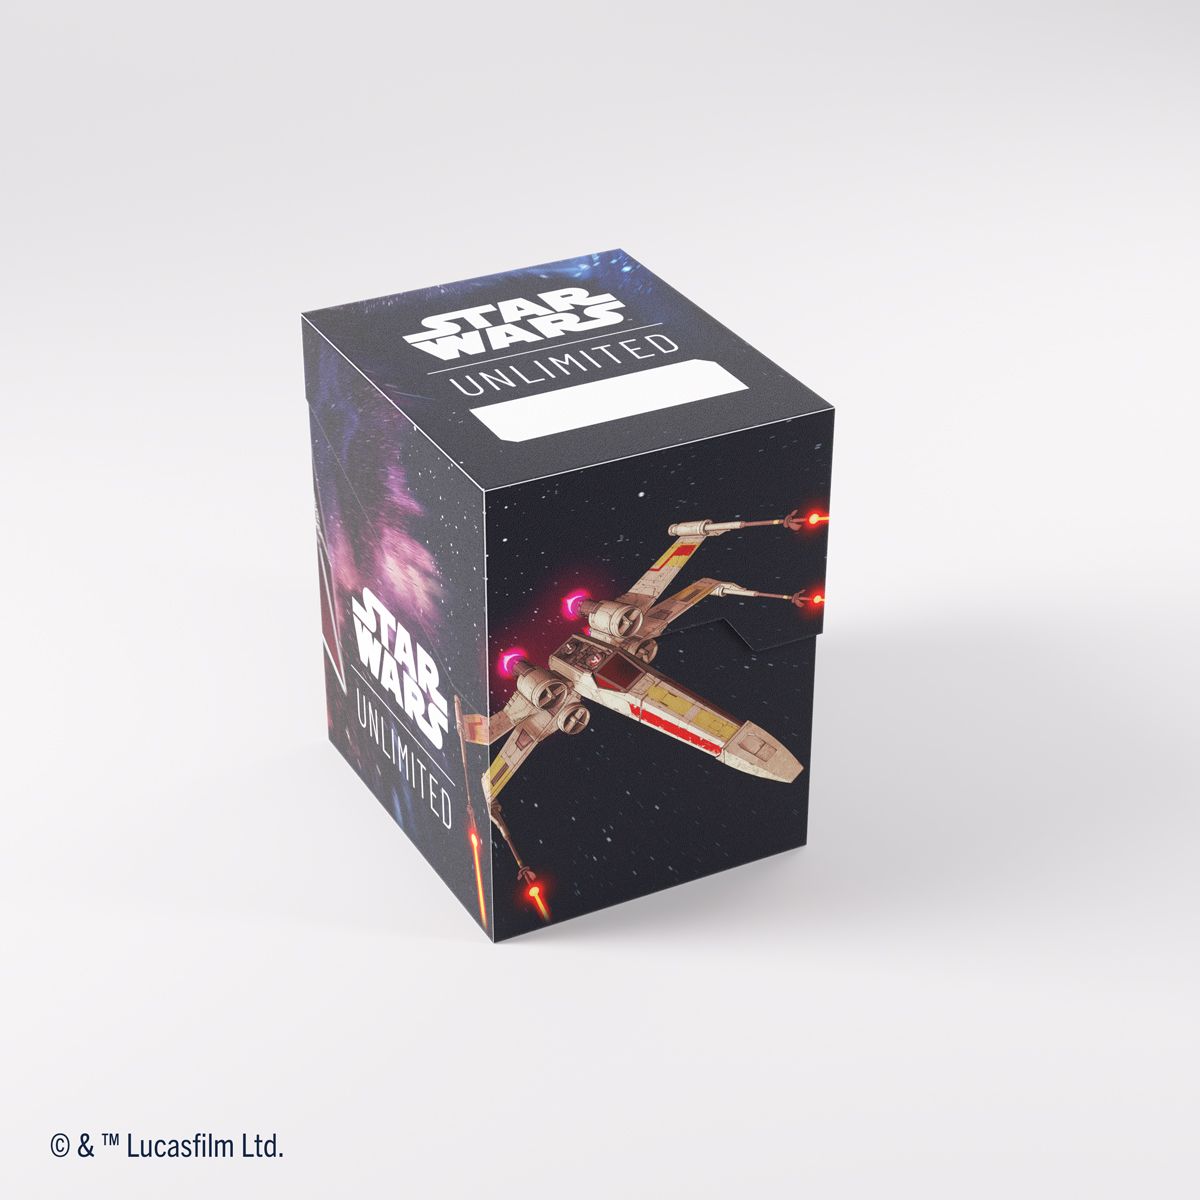 Gamegenic – Deckbox – weiche Kiste – Star Wars: Unlimited – X-Wing / TIE Fighter